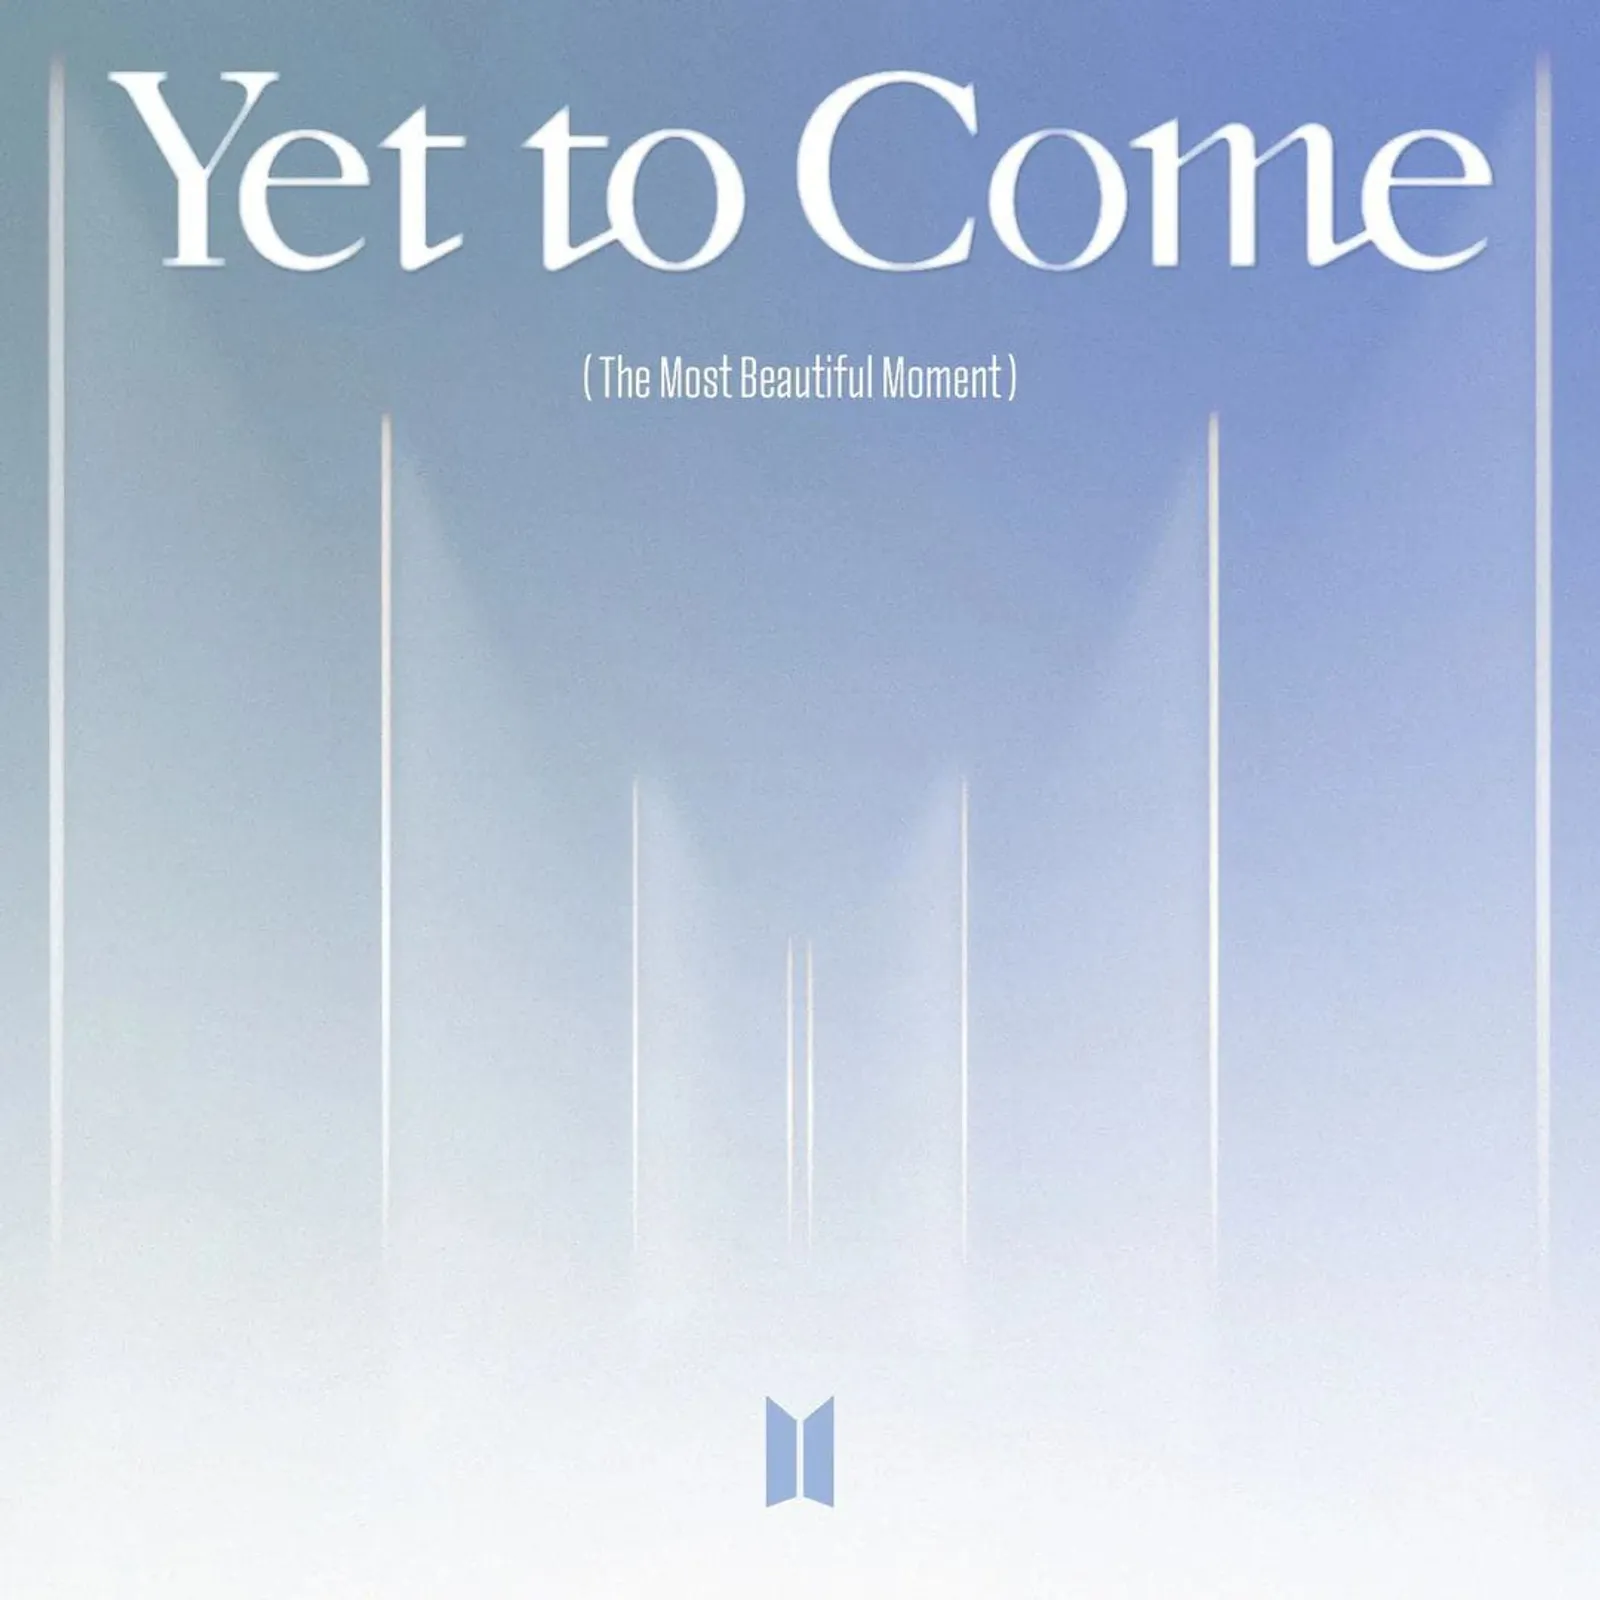 Kejutan! CD Spesial Single BTS "Yet To Come" Siap Dijual!